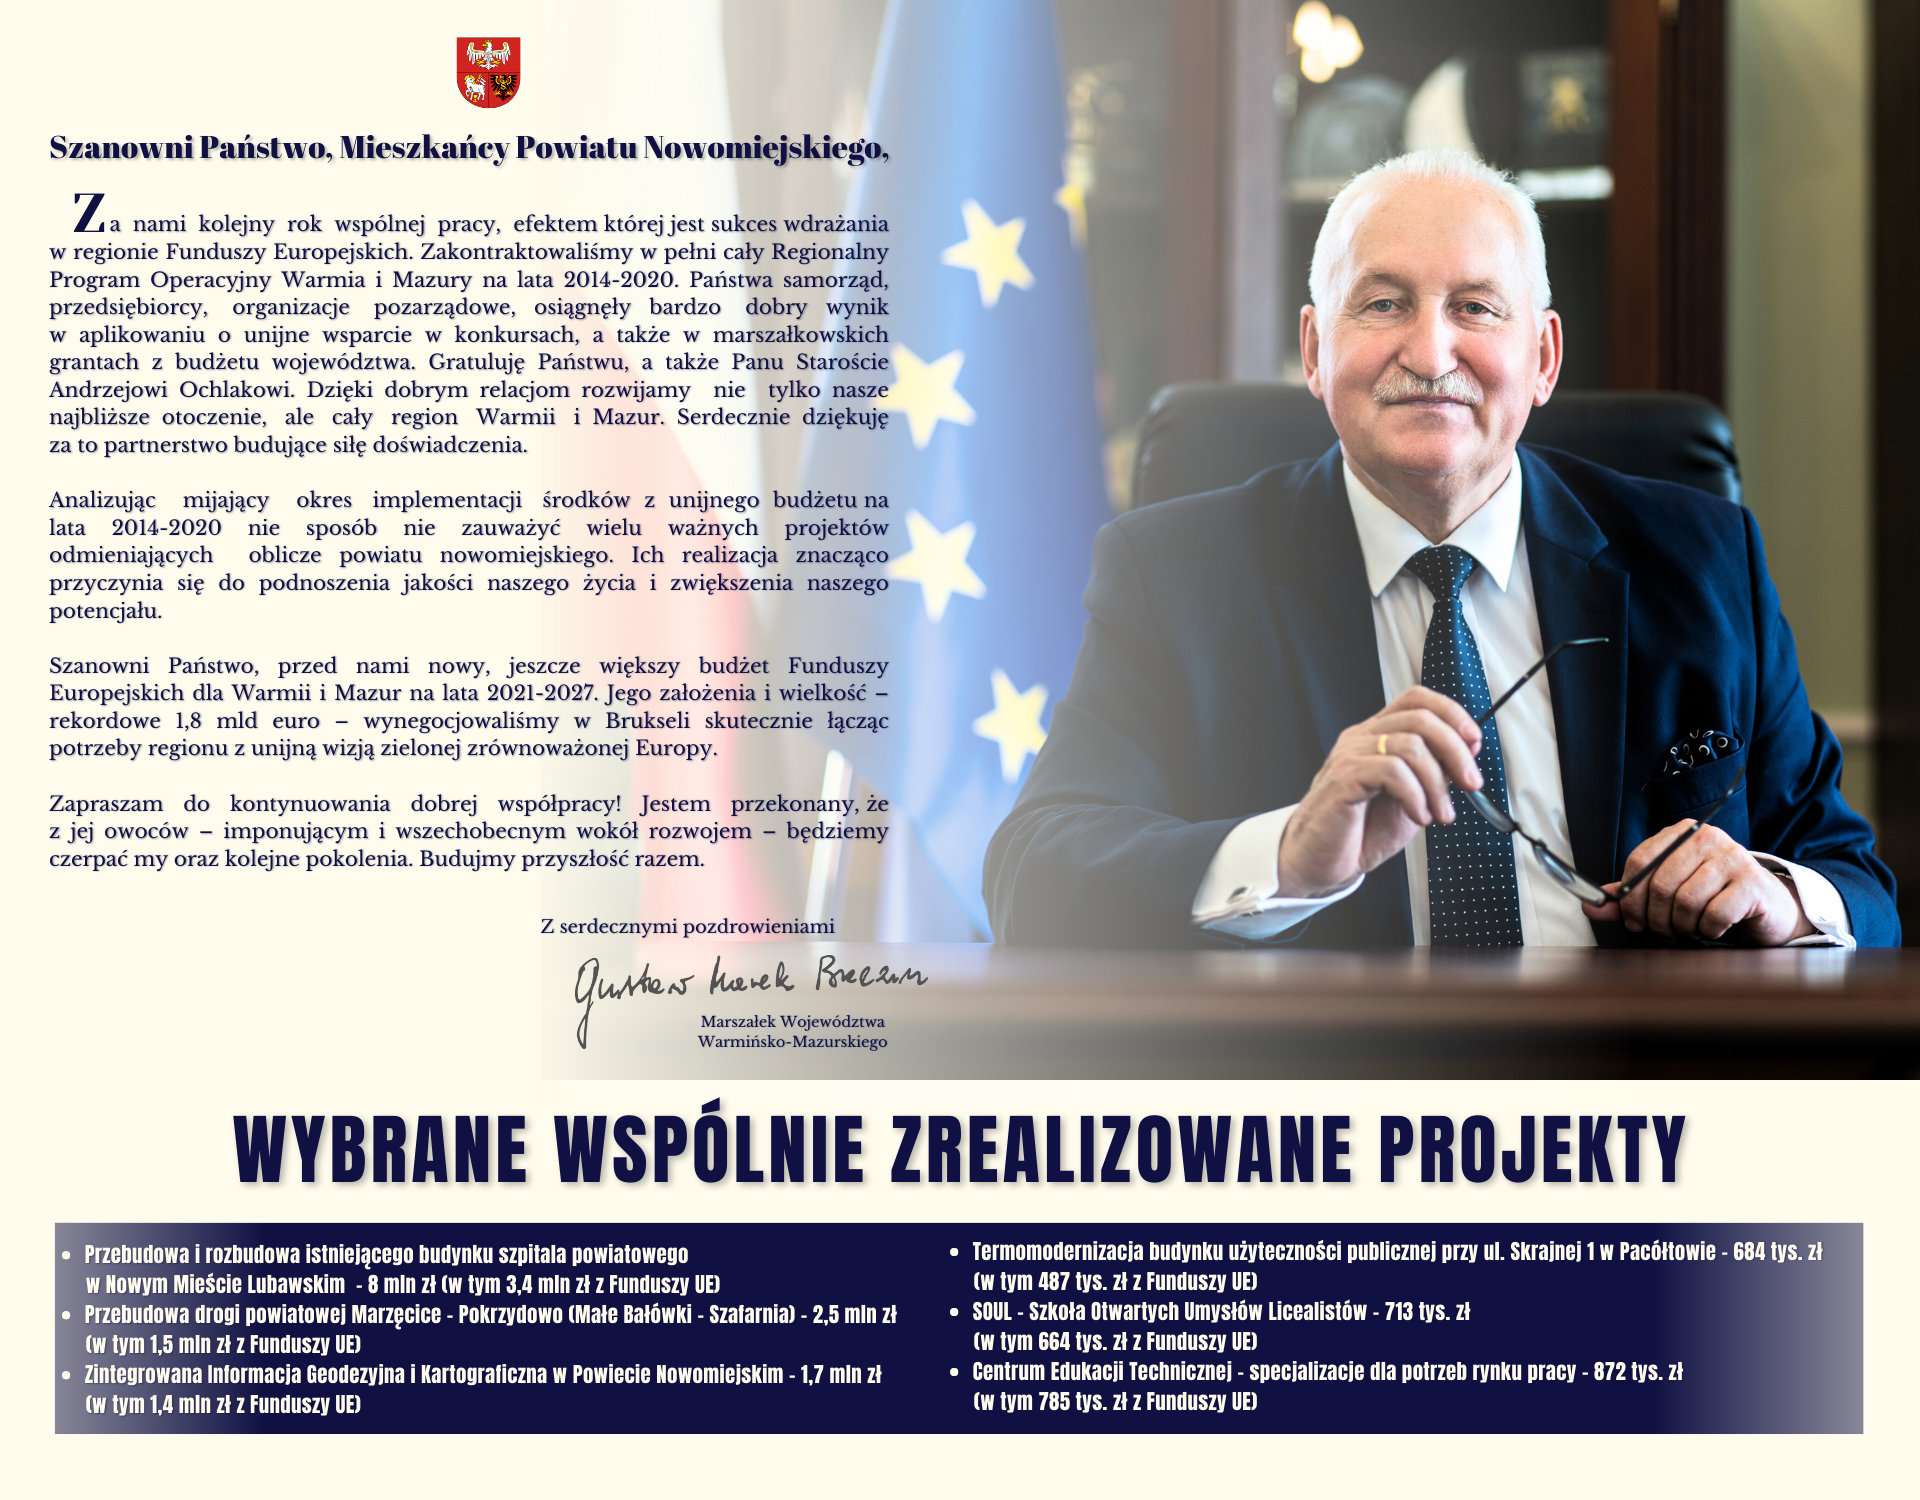 Projekty zrealizowane z samorządem województwa warmińsko-mazurskiego.